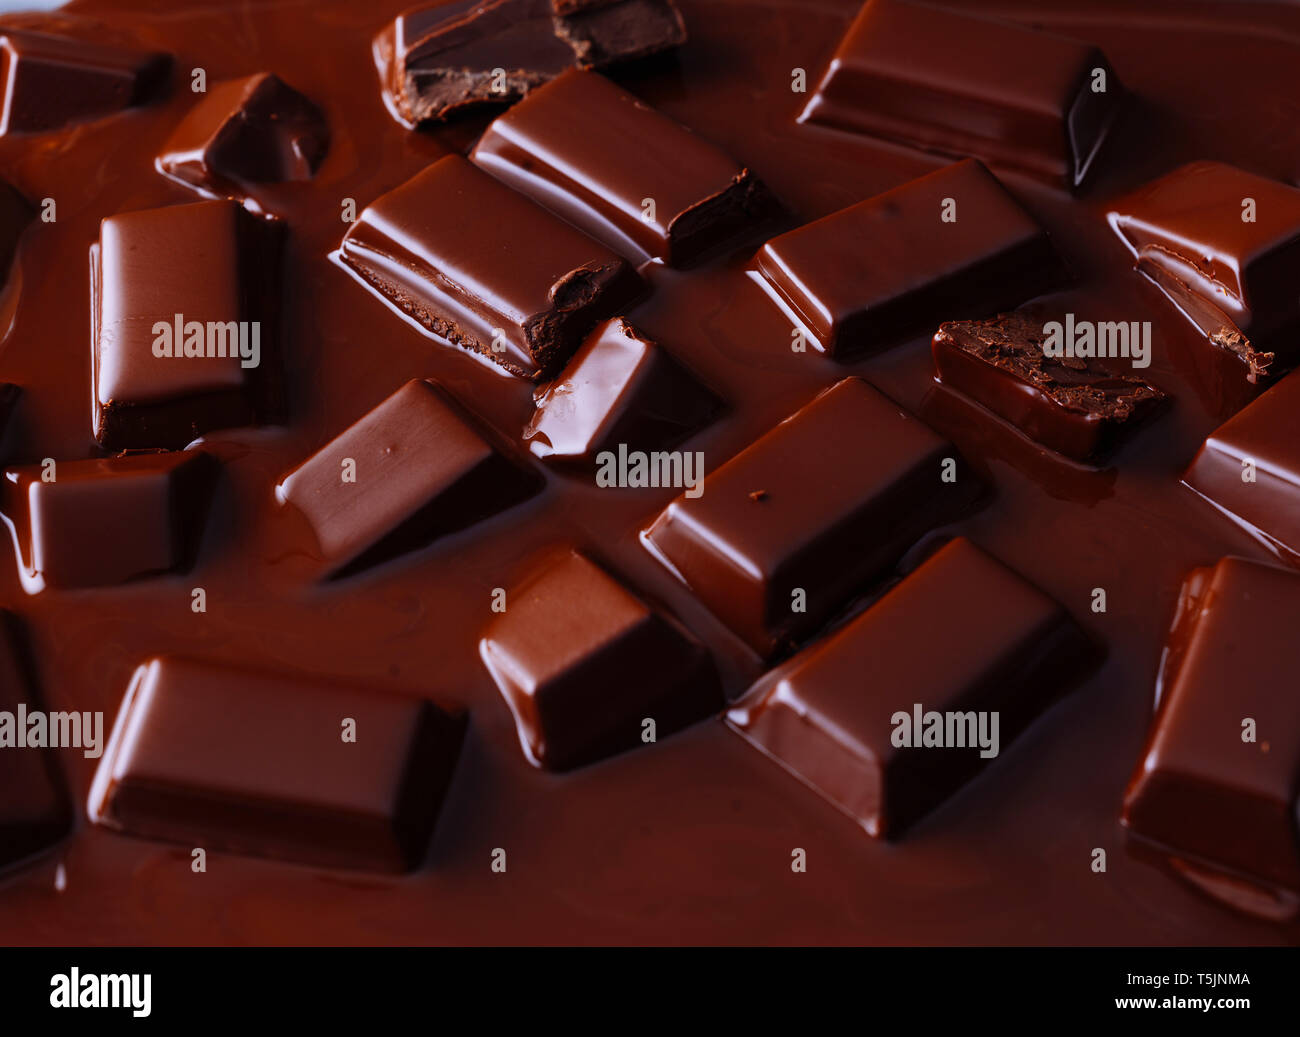 Pezzi di cioccolato fondente fuso in salsa di cioccolato Foto Stock